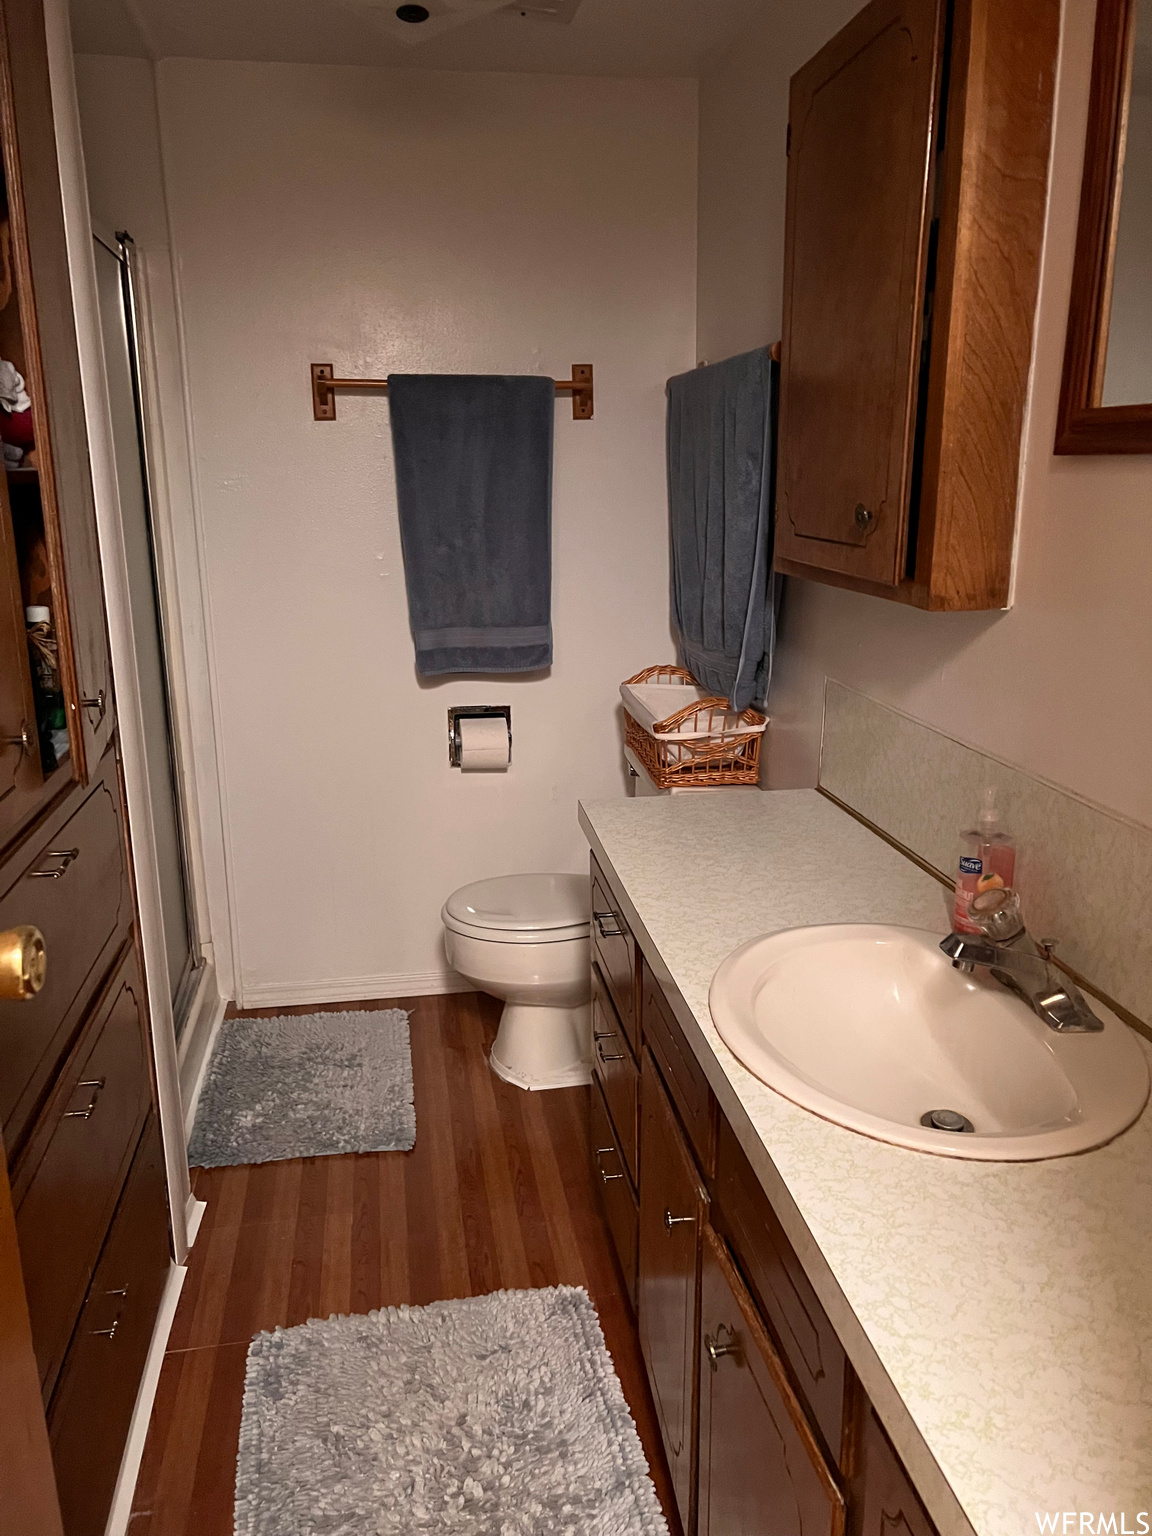 Half bathroom featuring wood-type flooring, toilet, and vanity